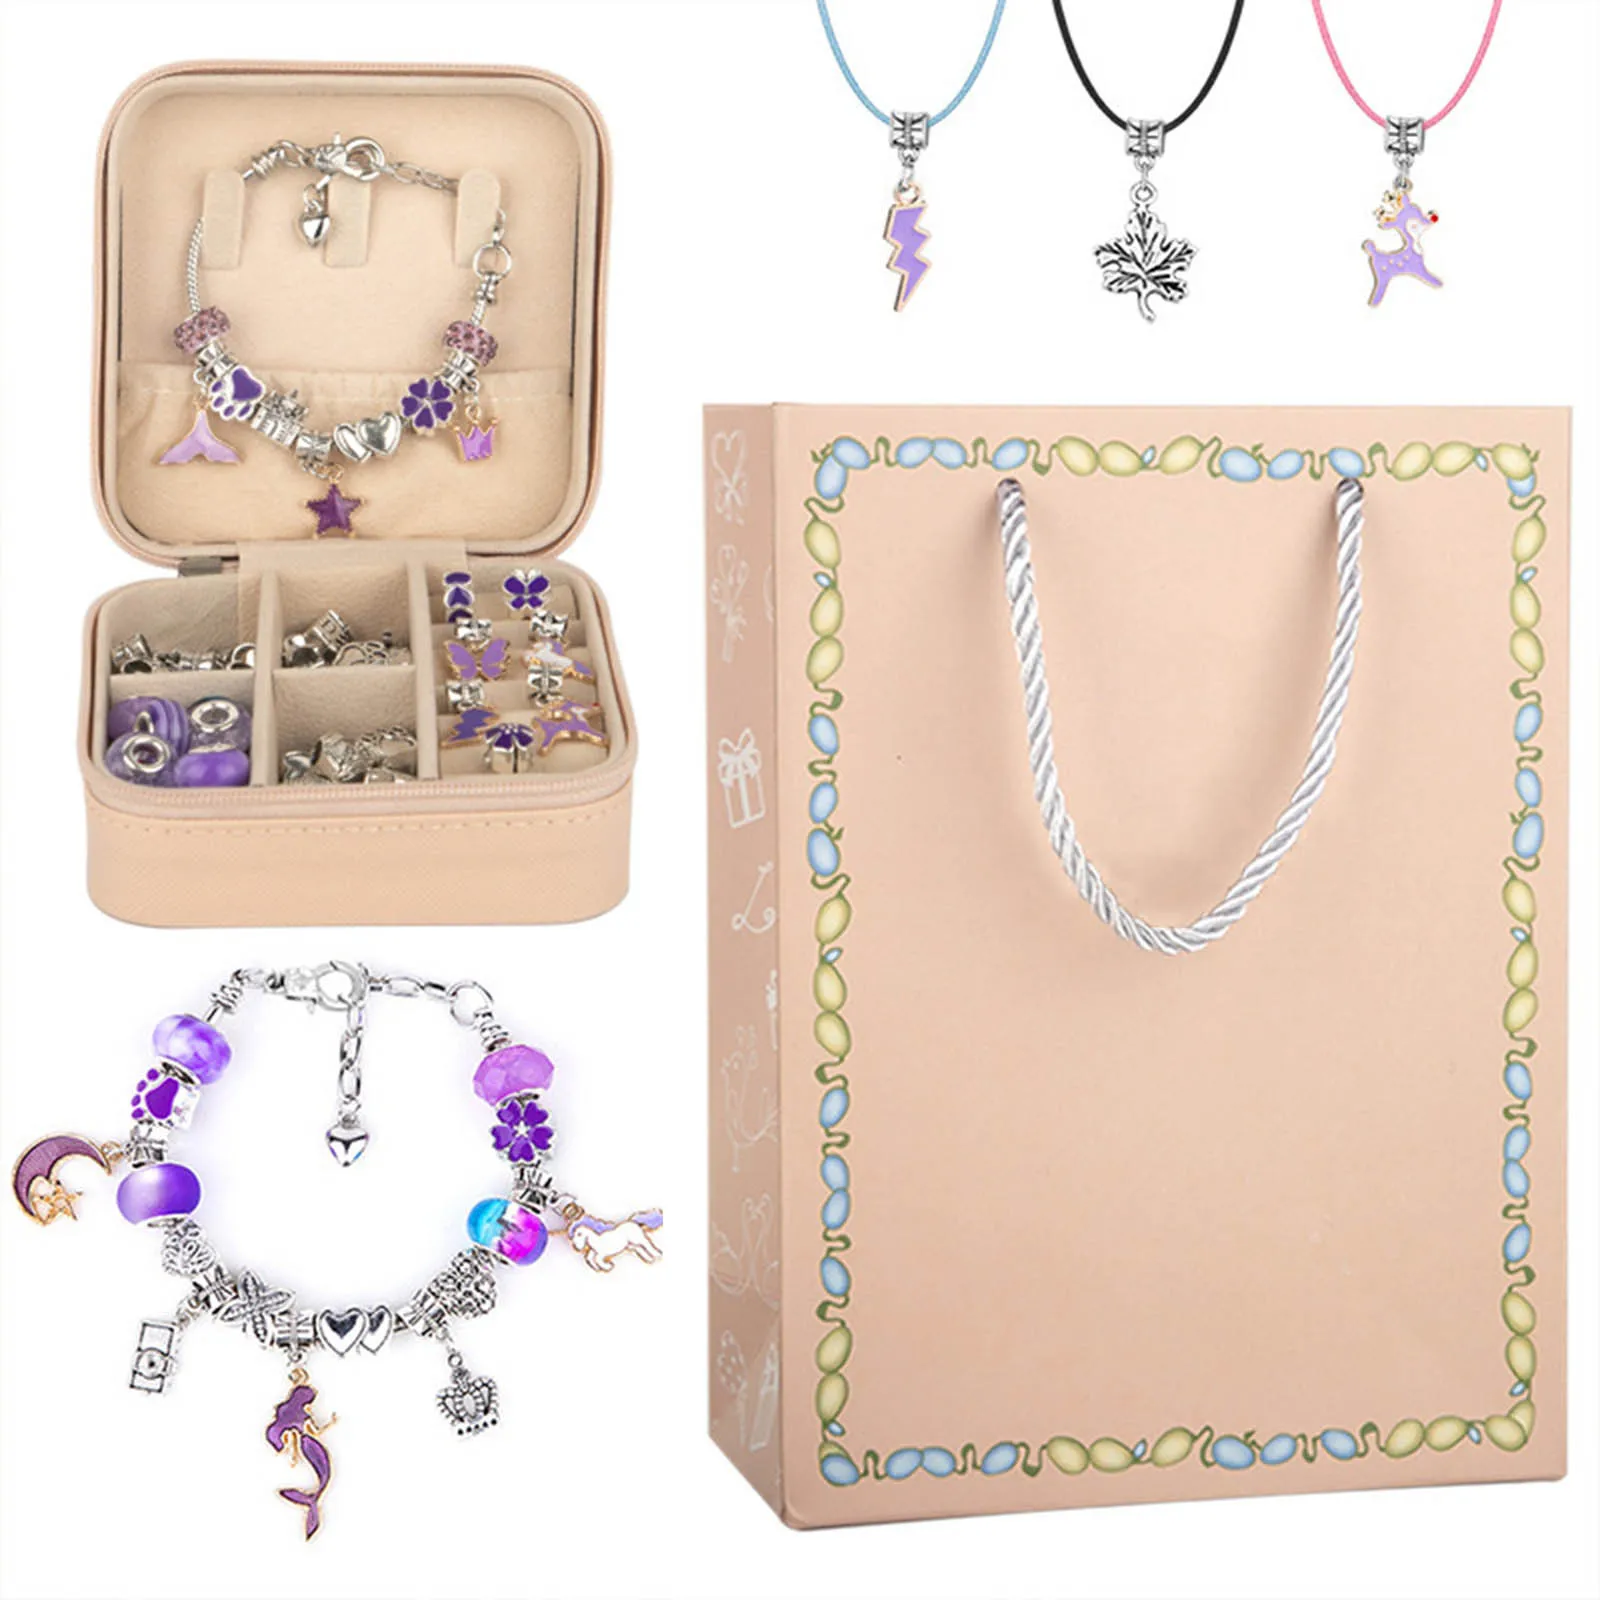 Caixa de jóias Express Melhores Desejos com Artesanatos Menina Adolescente Fazer Jóias Kit com Caixa de Jóias e Saco de Presente